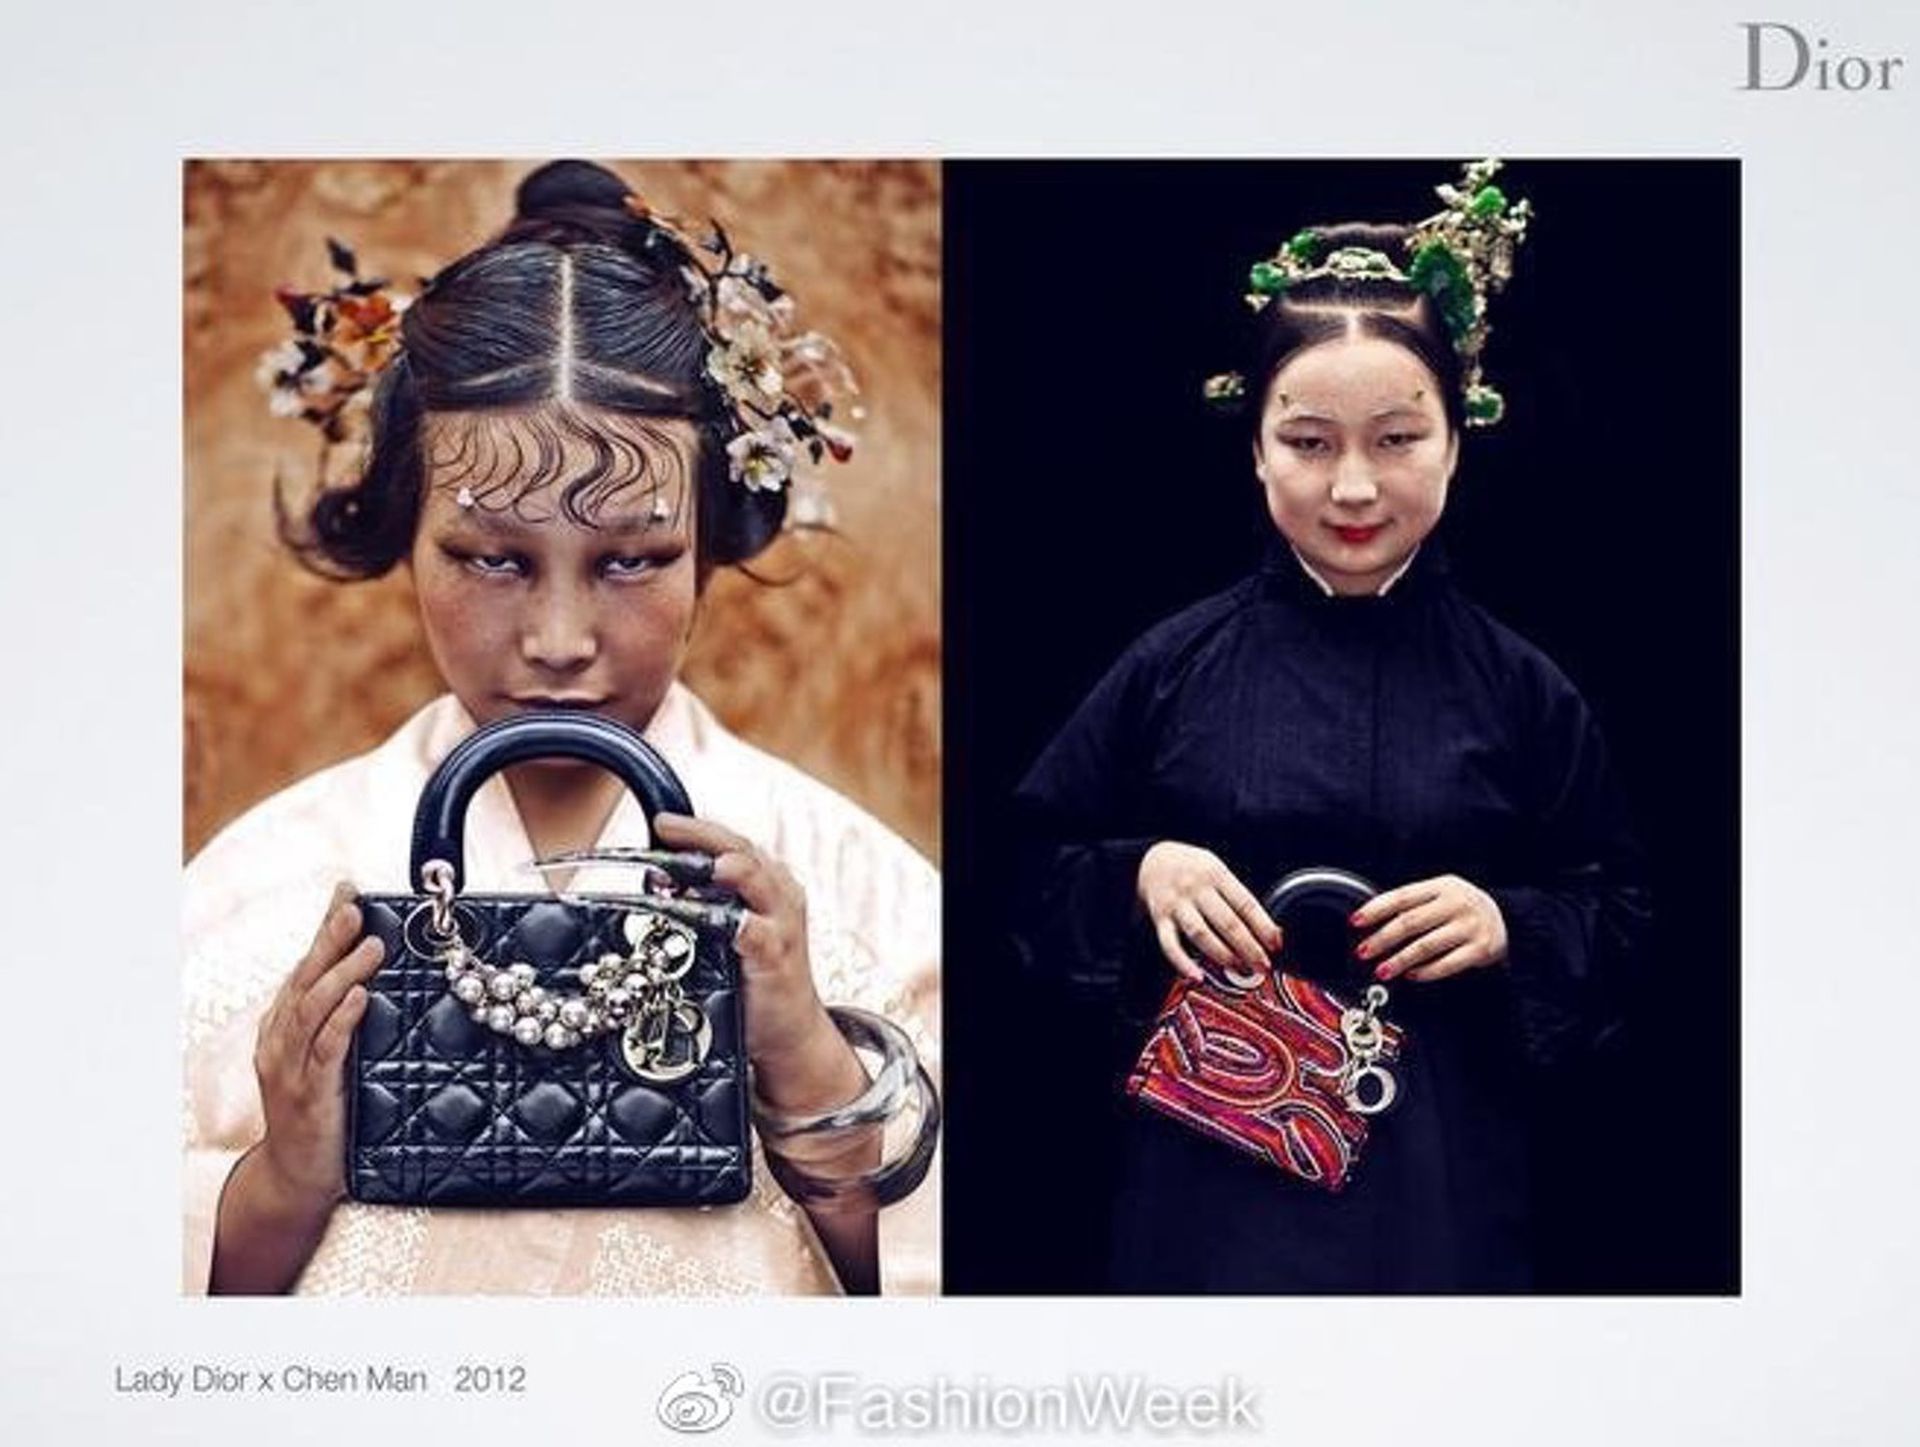 中国摄影师陈漫近日为Dior展览拍摄的照片在内地引起广泛争议，被网友质疑“丑化亚裔形象”。（微博@FashionWeek）